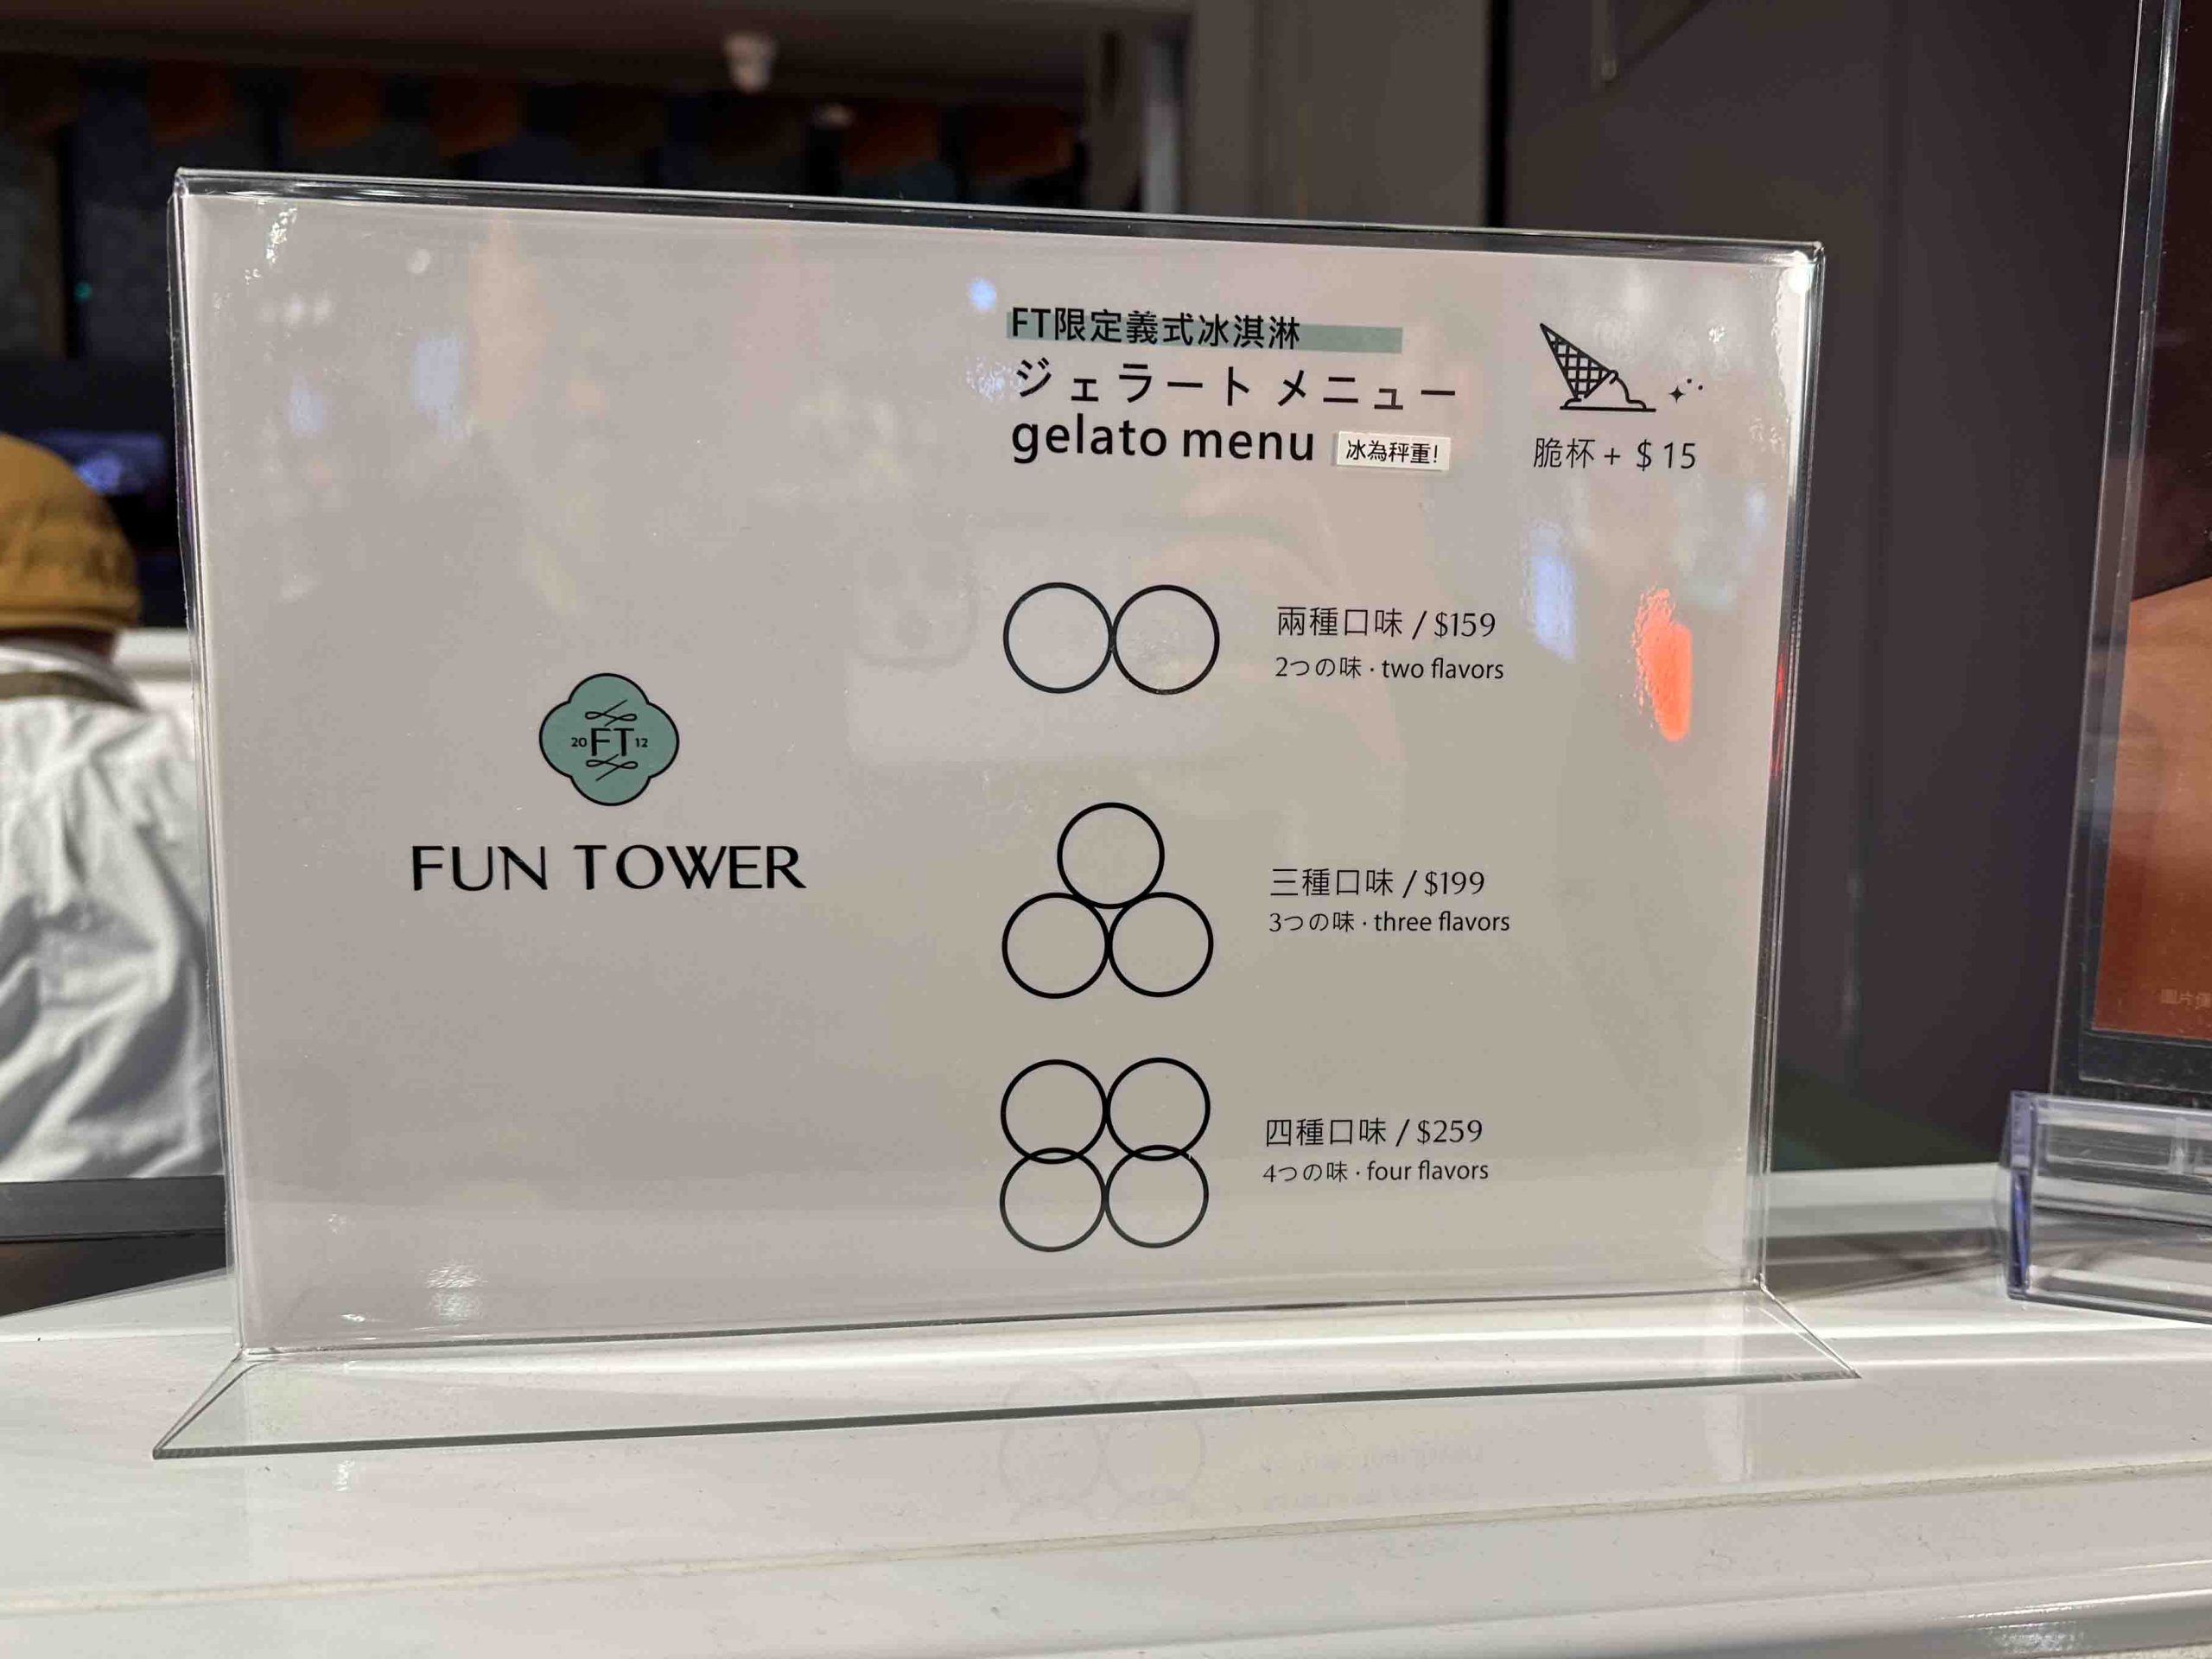 新竹日式可麗餅【巨城 fun tower】不用日本就能吃到軟式可麗餅 附菜單